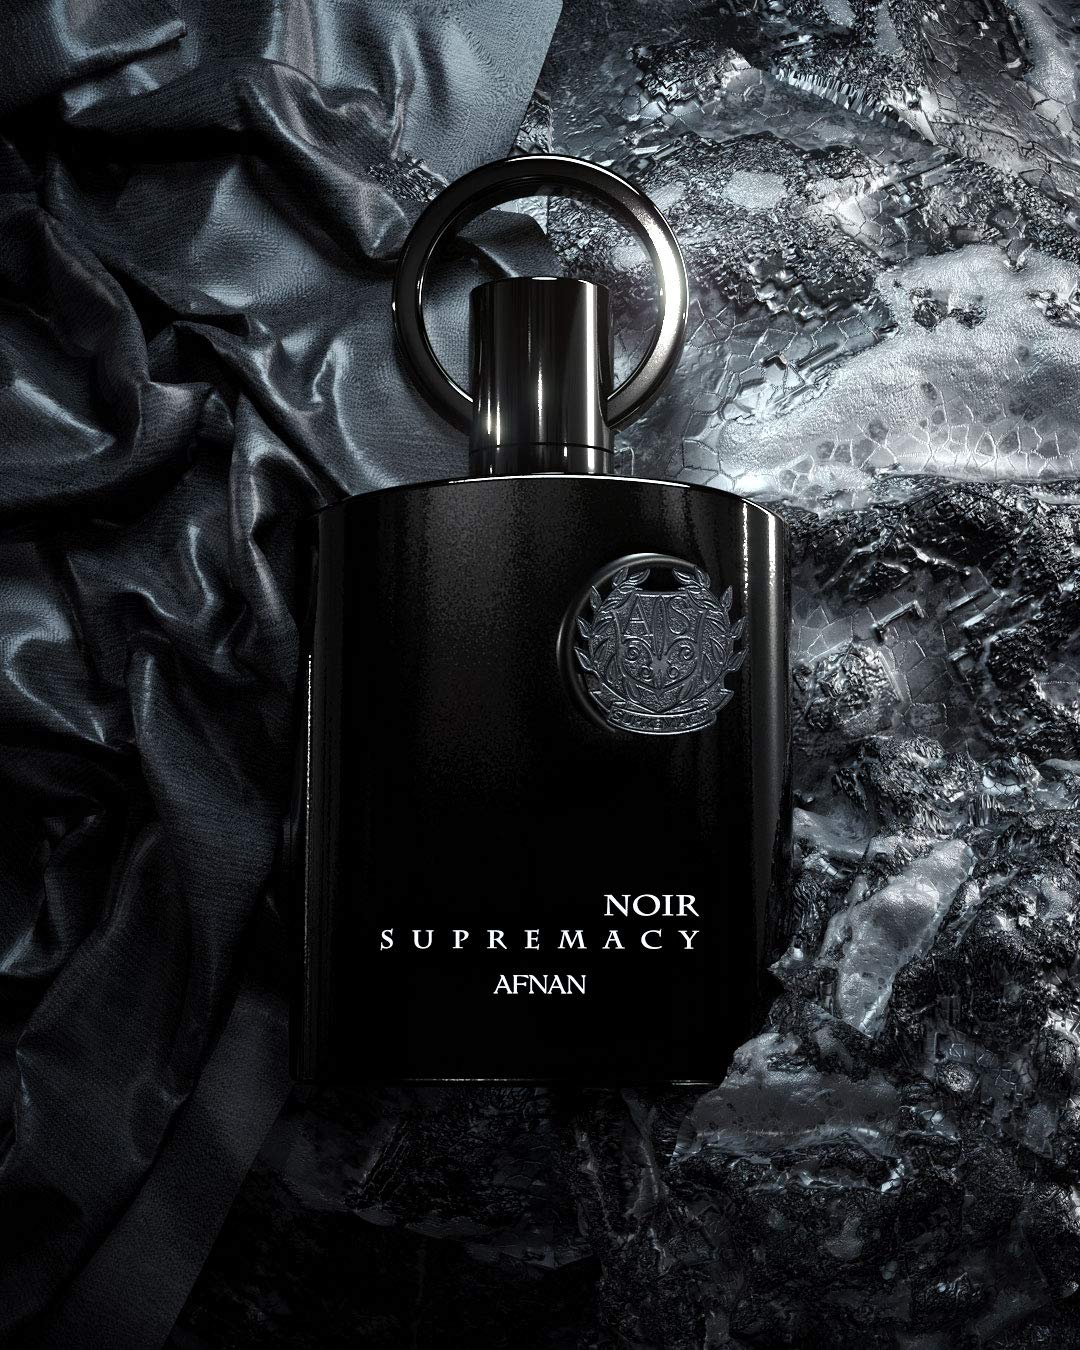 Supremacy Noir Eau De Perfum - 100ML (3.4Oz) by Afnan - Intense Oud